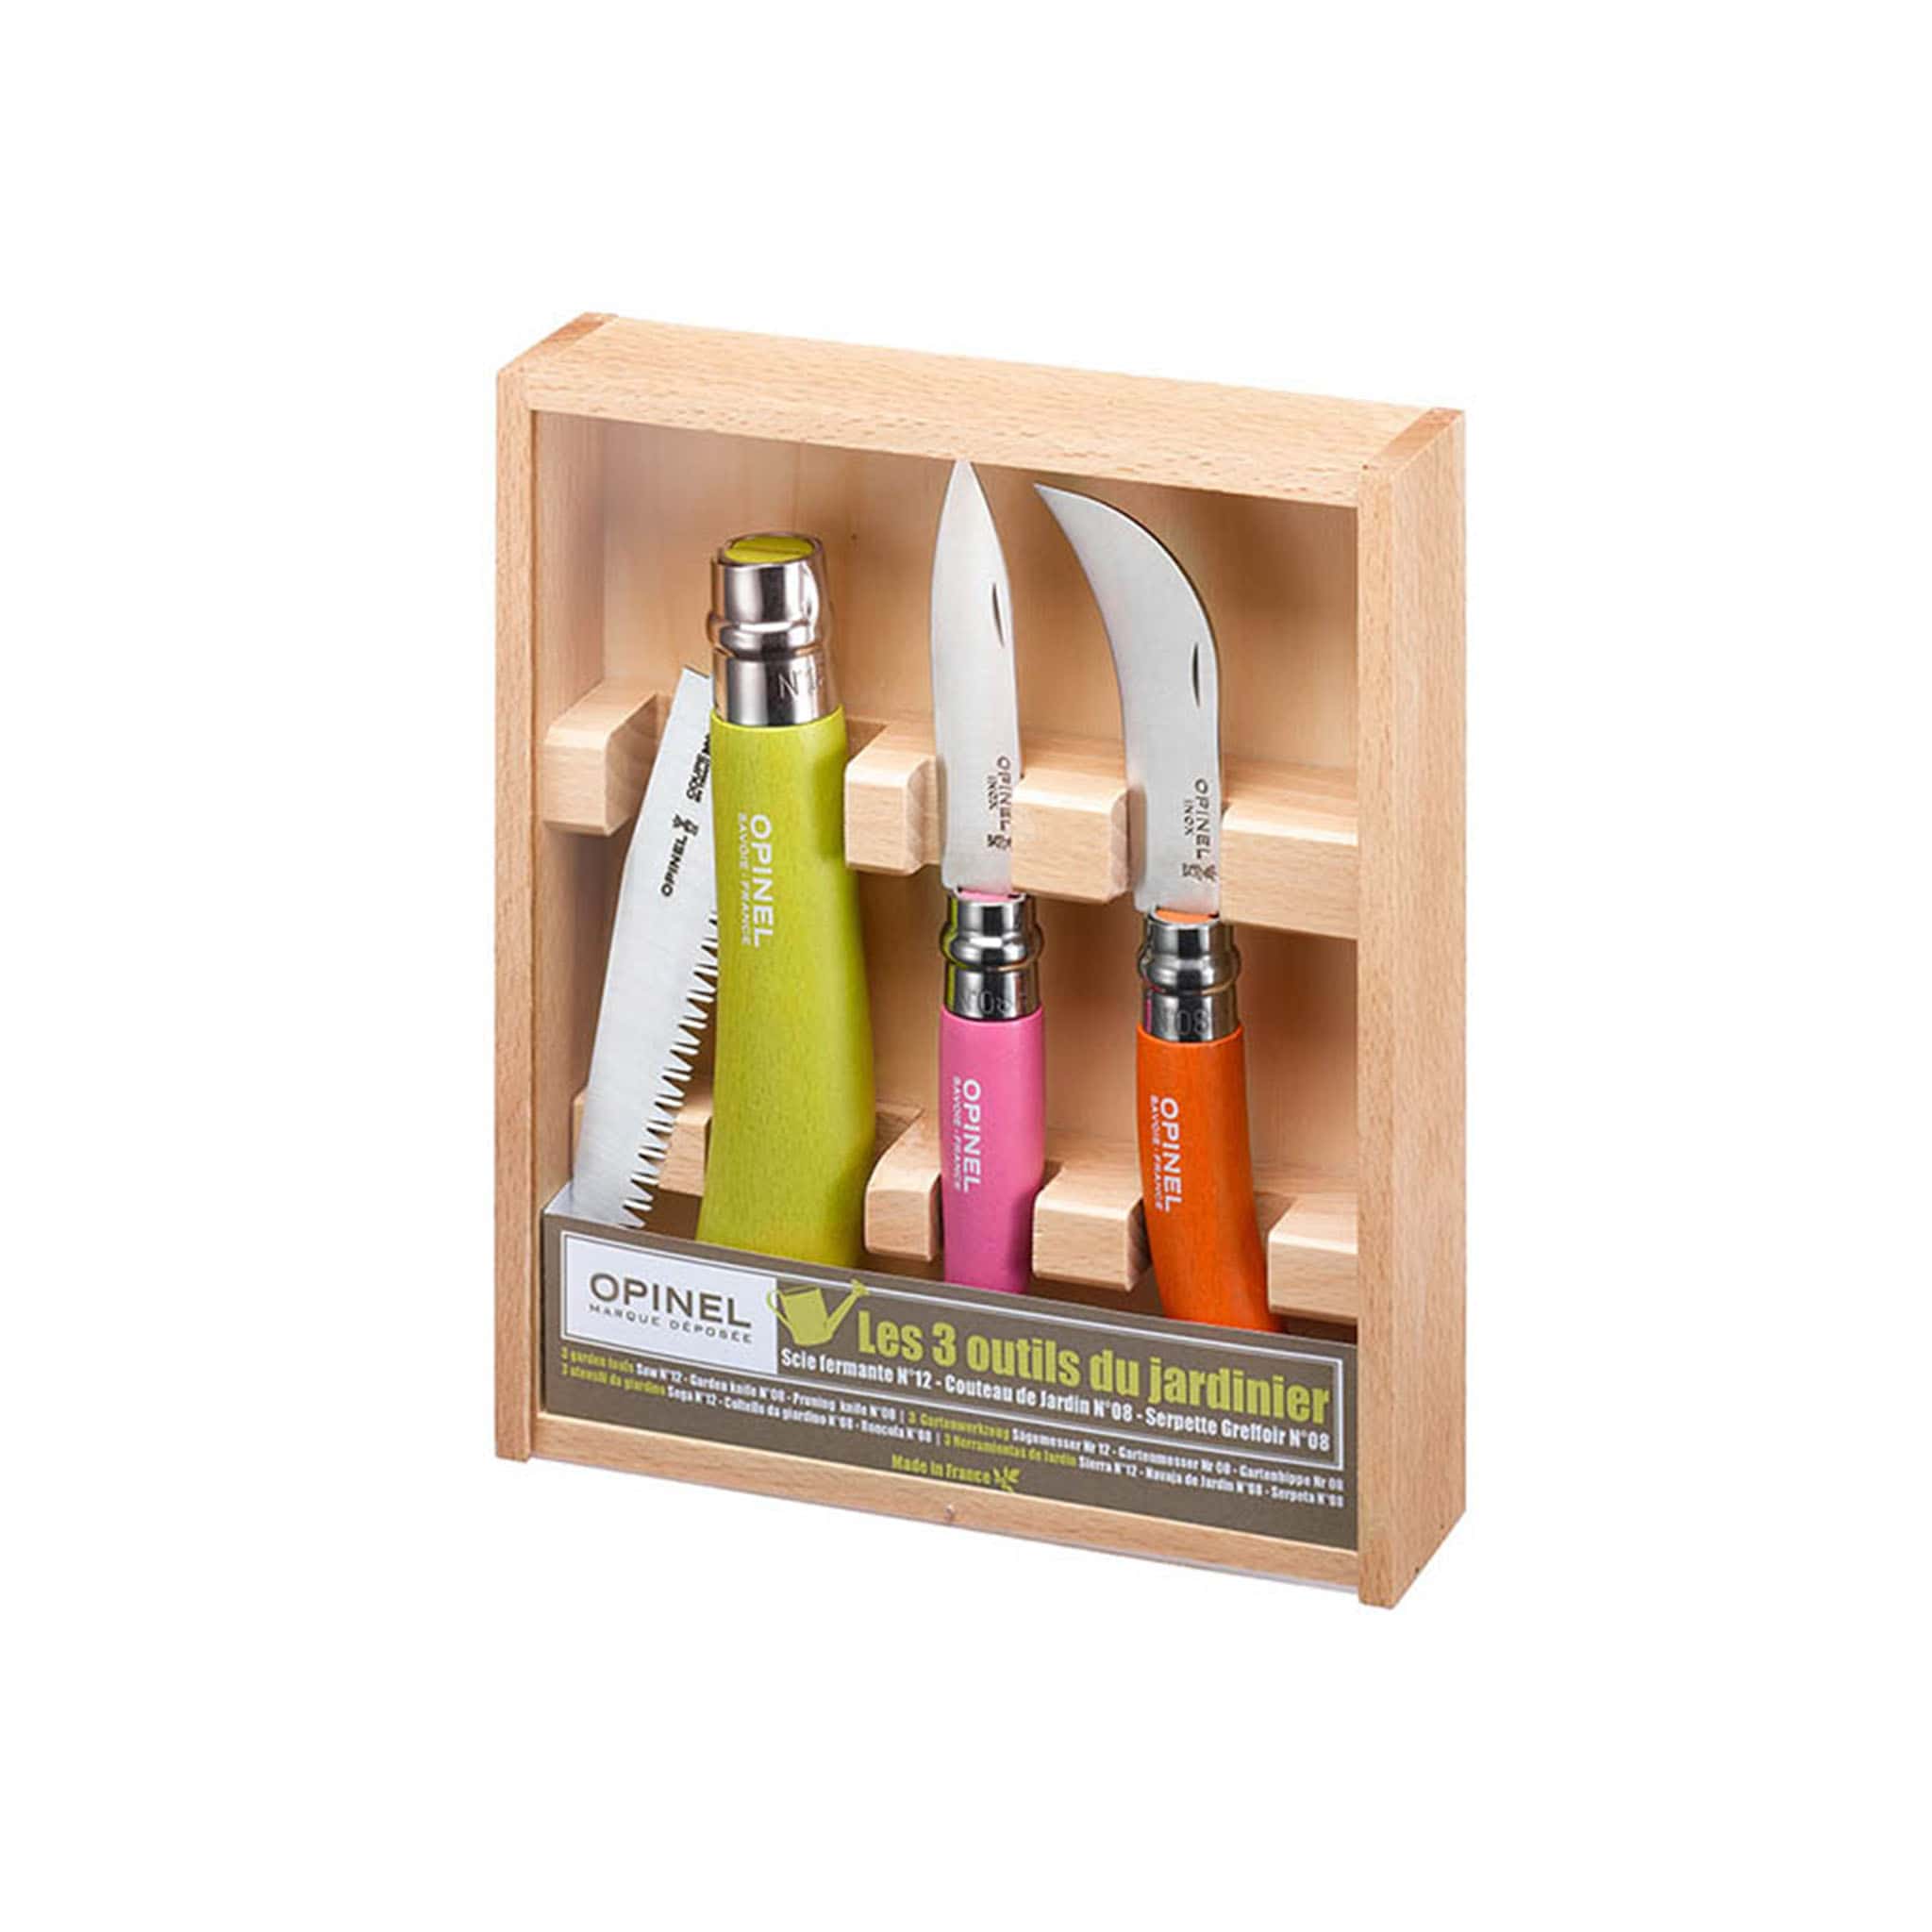 Opinel Gardening Knife Box Set